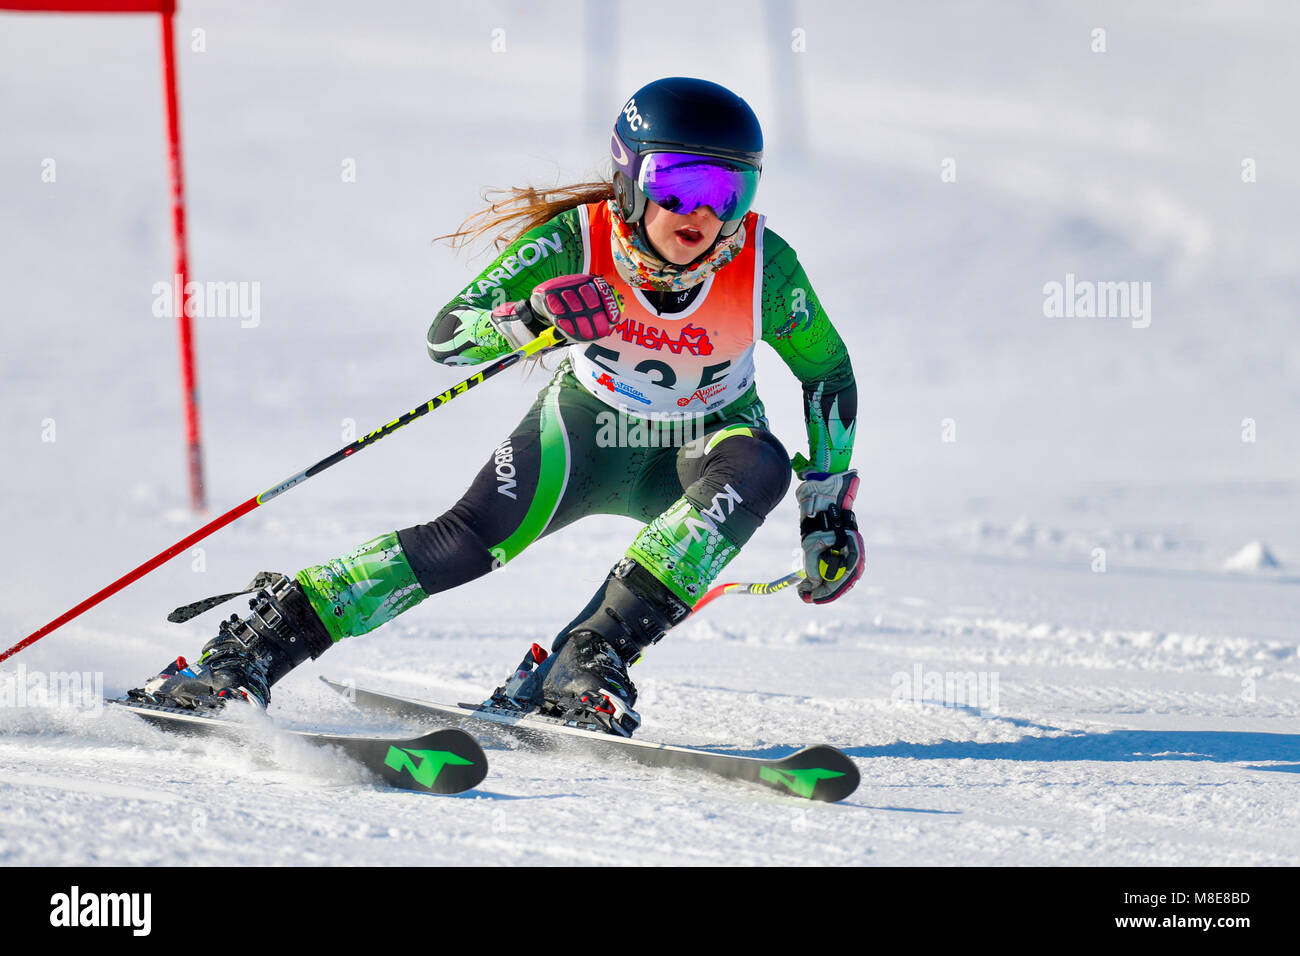 Neve sciatore sullo slalom gigante corso durante una gara. Foto Stock